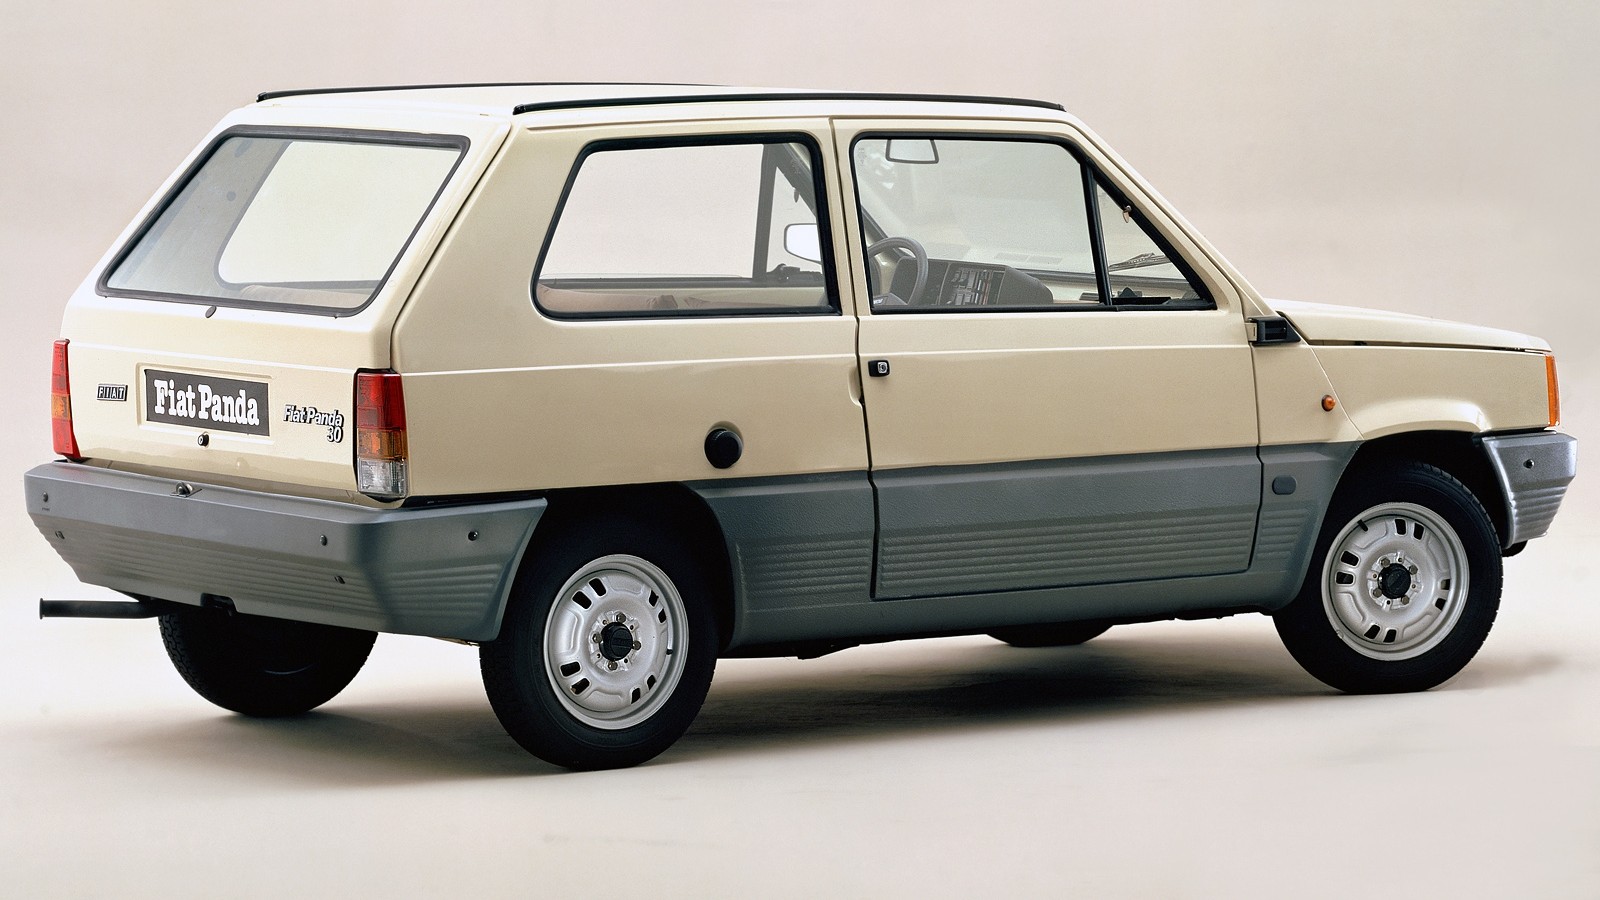 Fiat Panda 30 (141) 